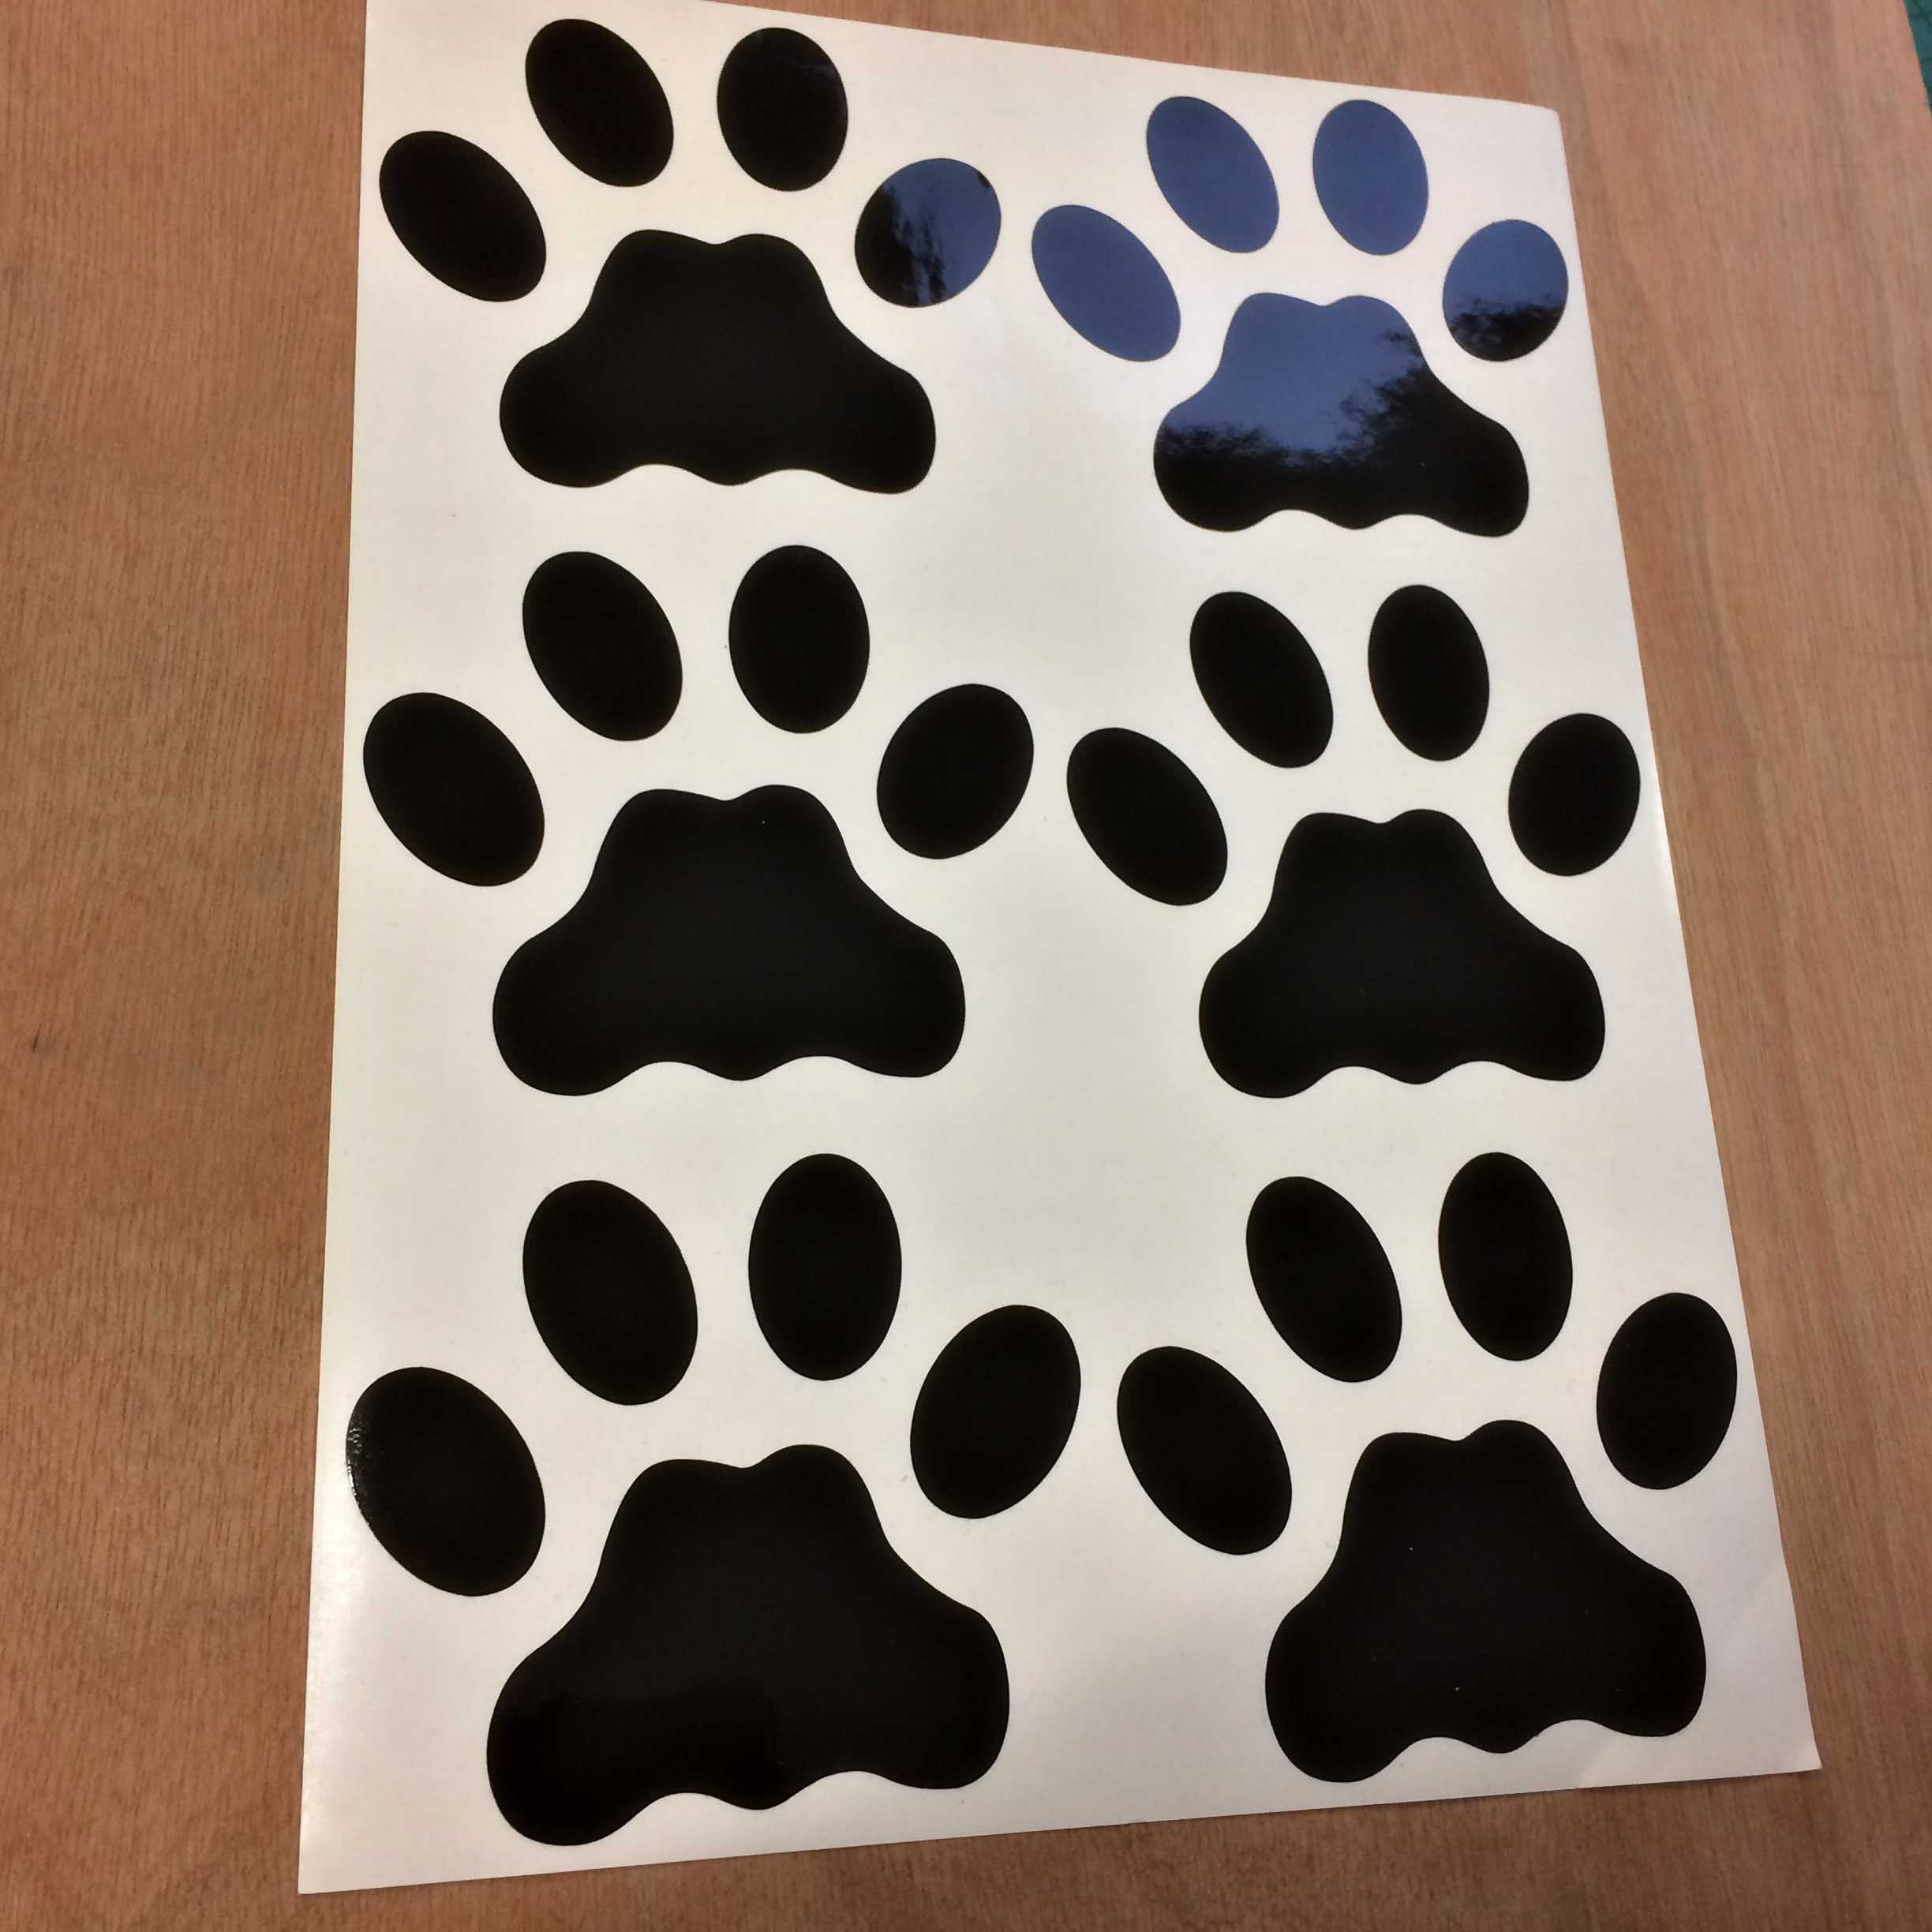 DOG PAW PRINTS STICKERS. Dog paw prints in black.